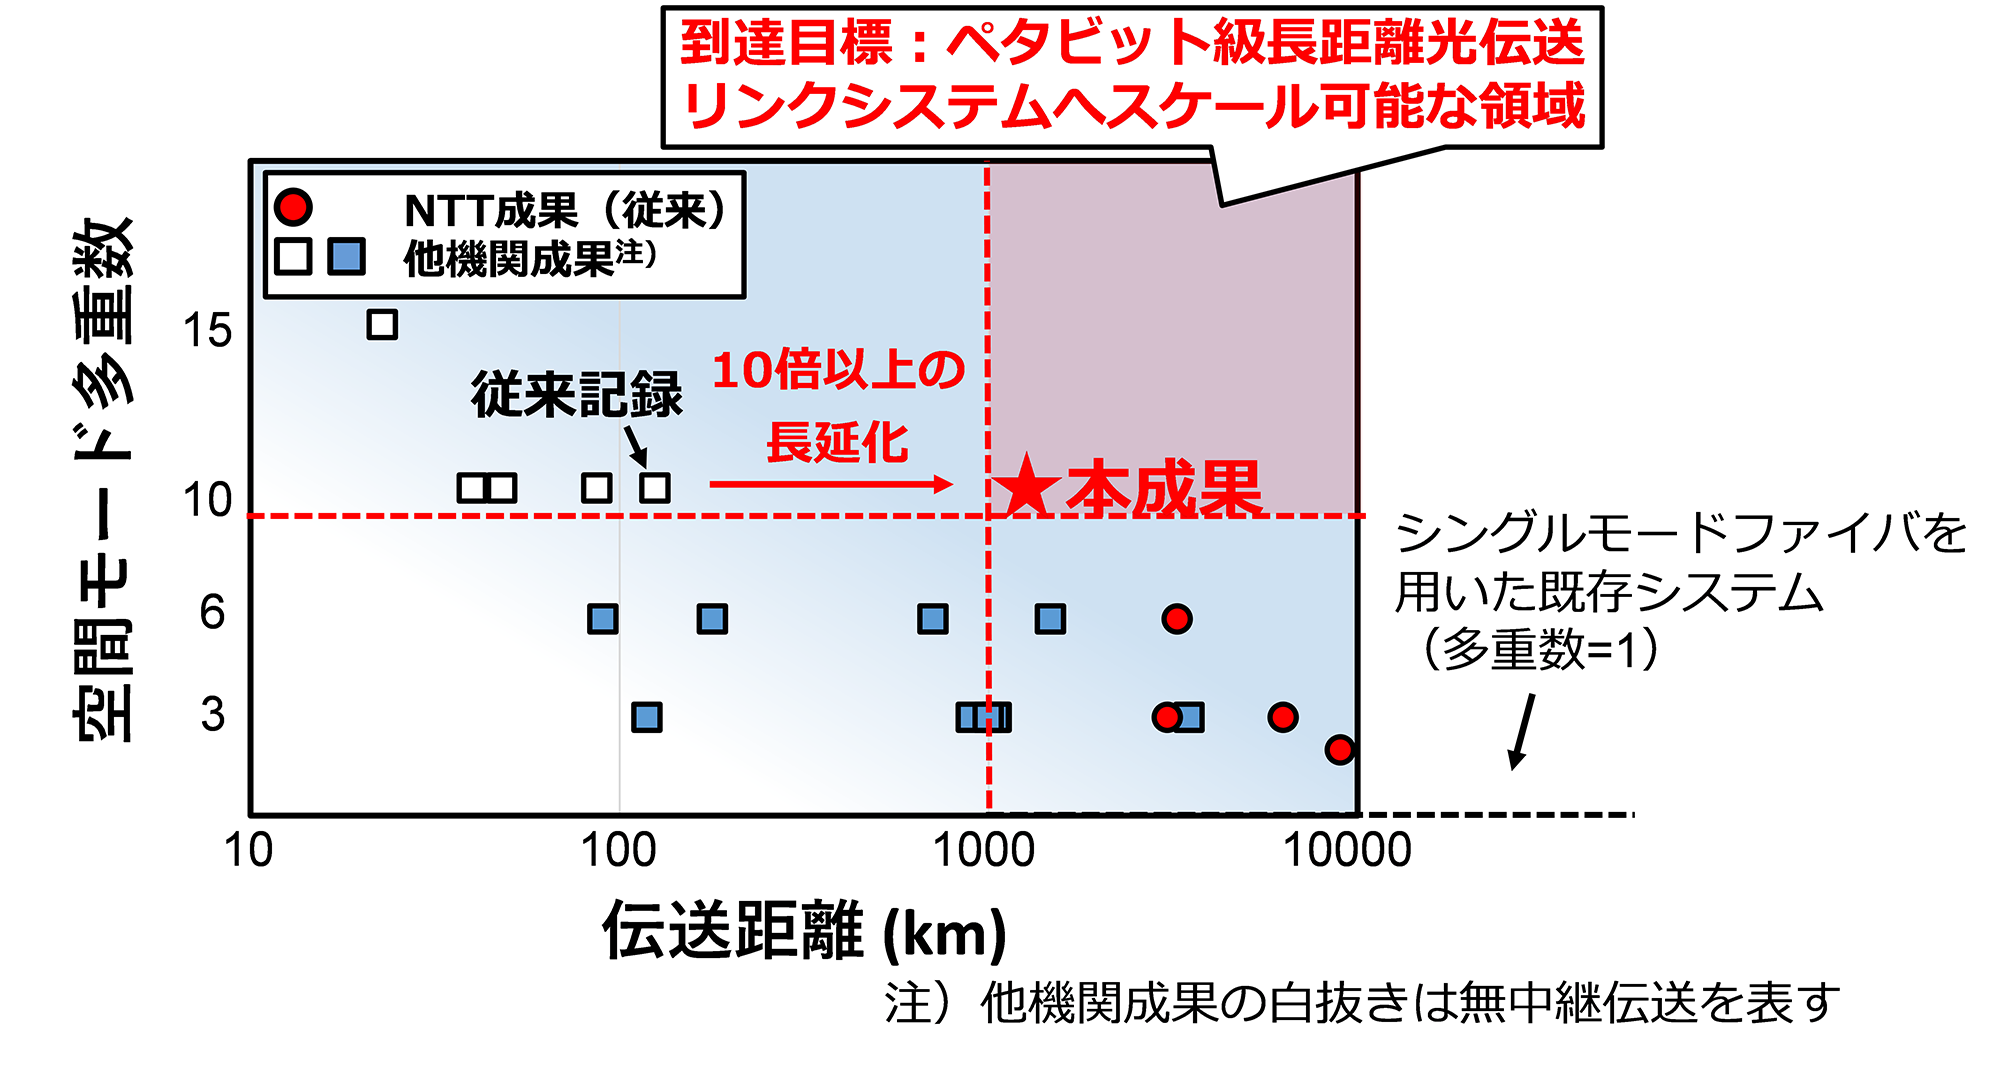 図1 マルチモード光ファイバを用いた長距離伝送の動向、および本成果の位置づけ